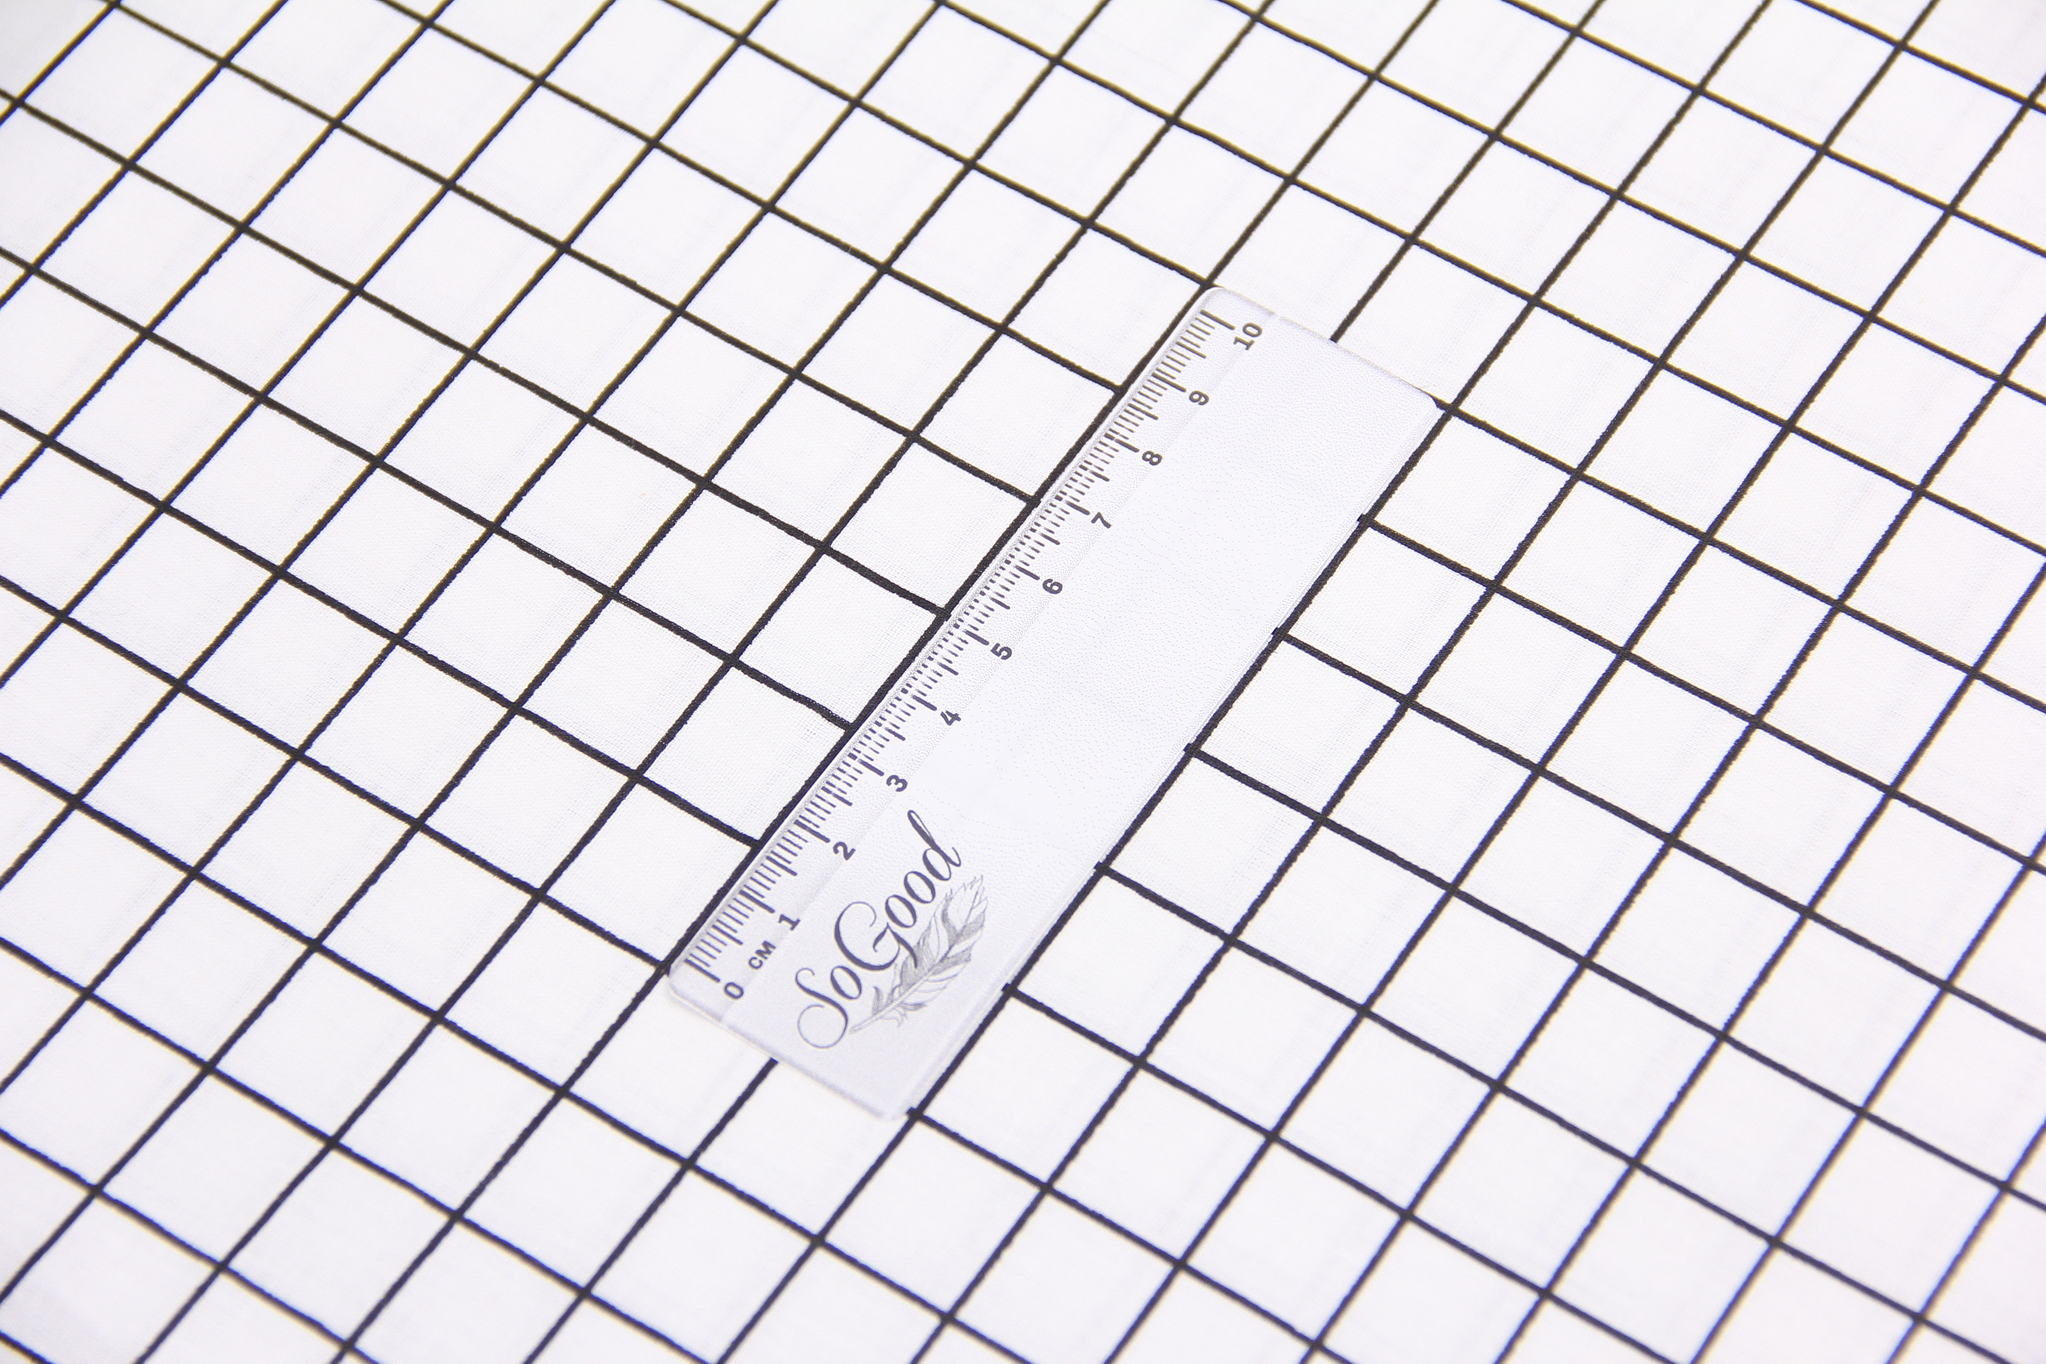 Ткань Ранфорс Клеточка 1,5х1,5 Белый и черный, Турция, ширина 240 см, 100% хлопок